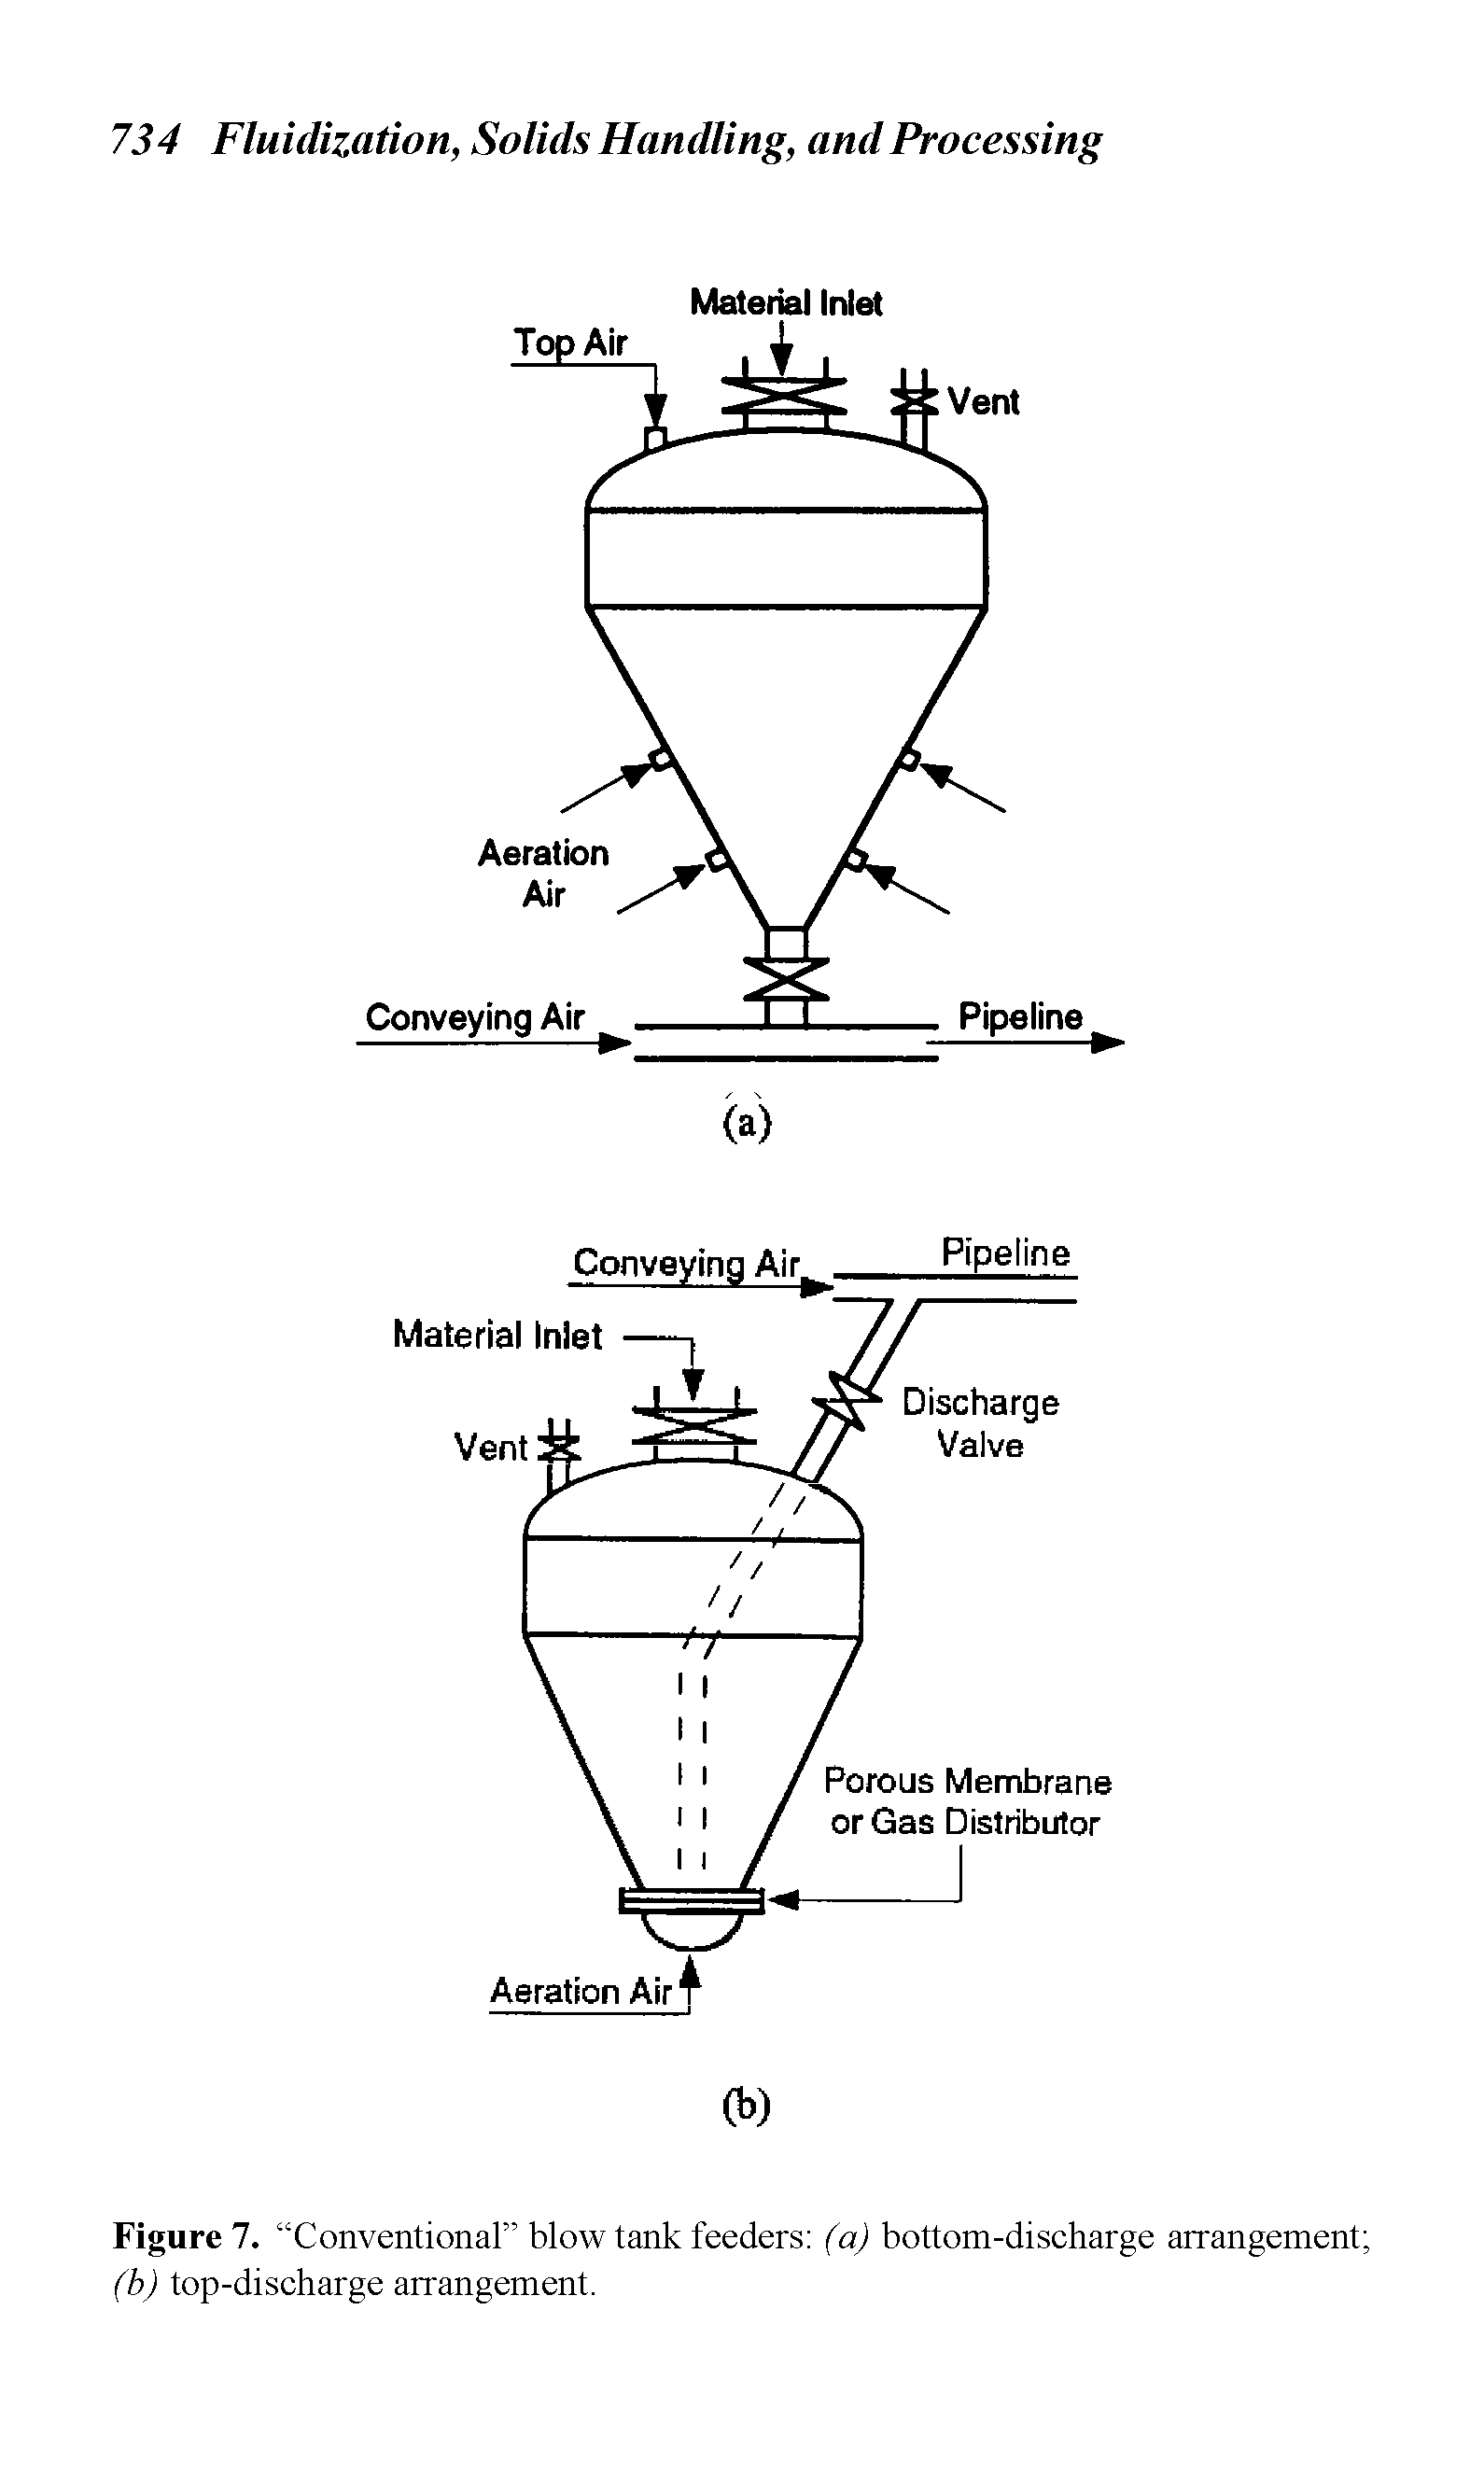 Figure 7. Conventional blow tank feeders (a) bottom-discharge arrangement (b) top-discharge arrangement.